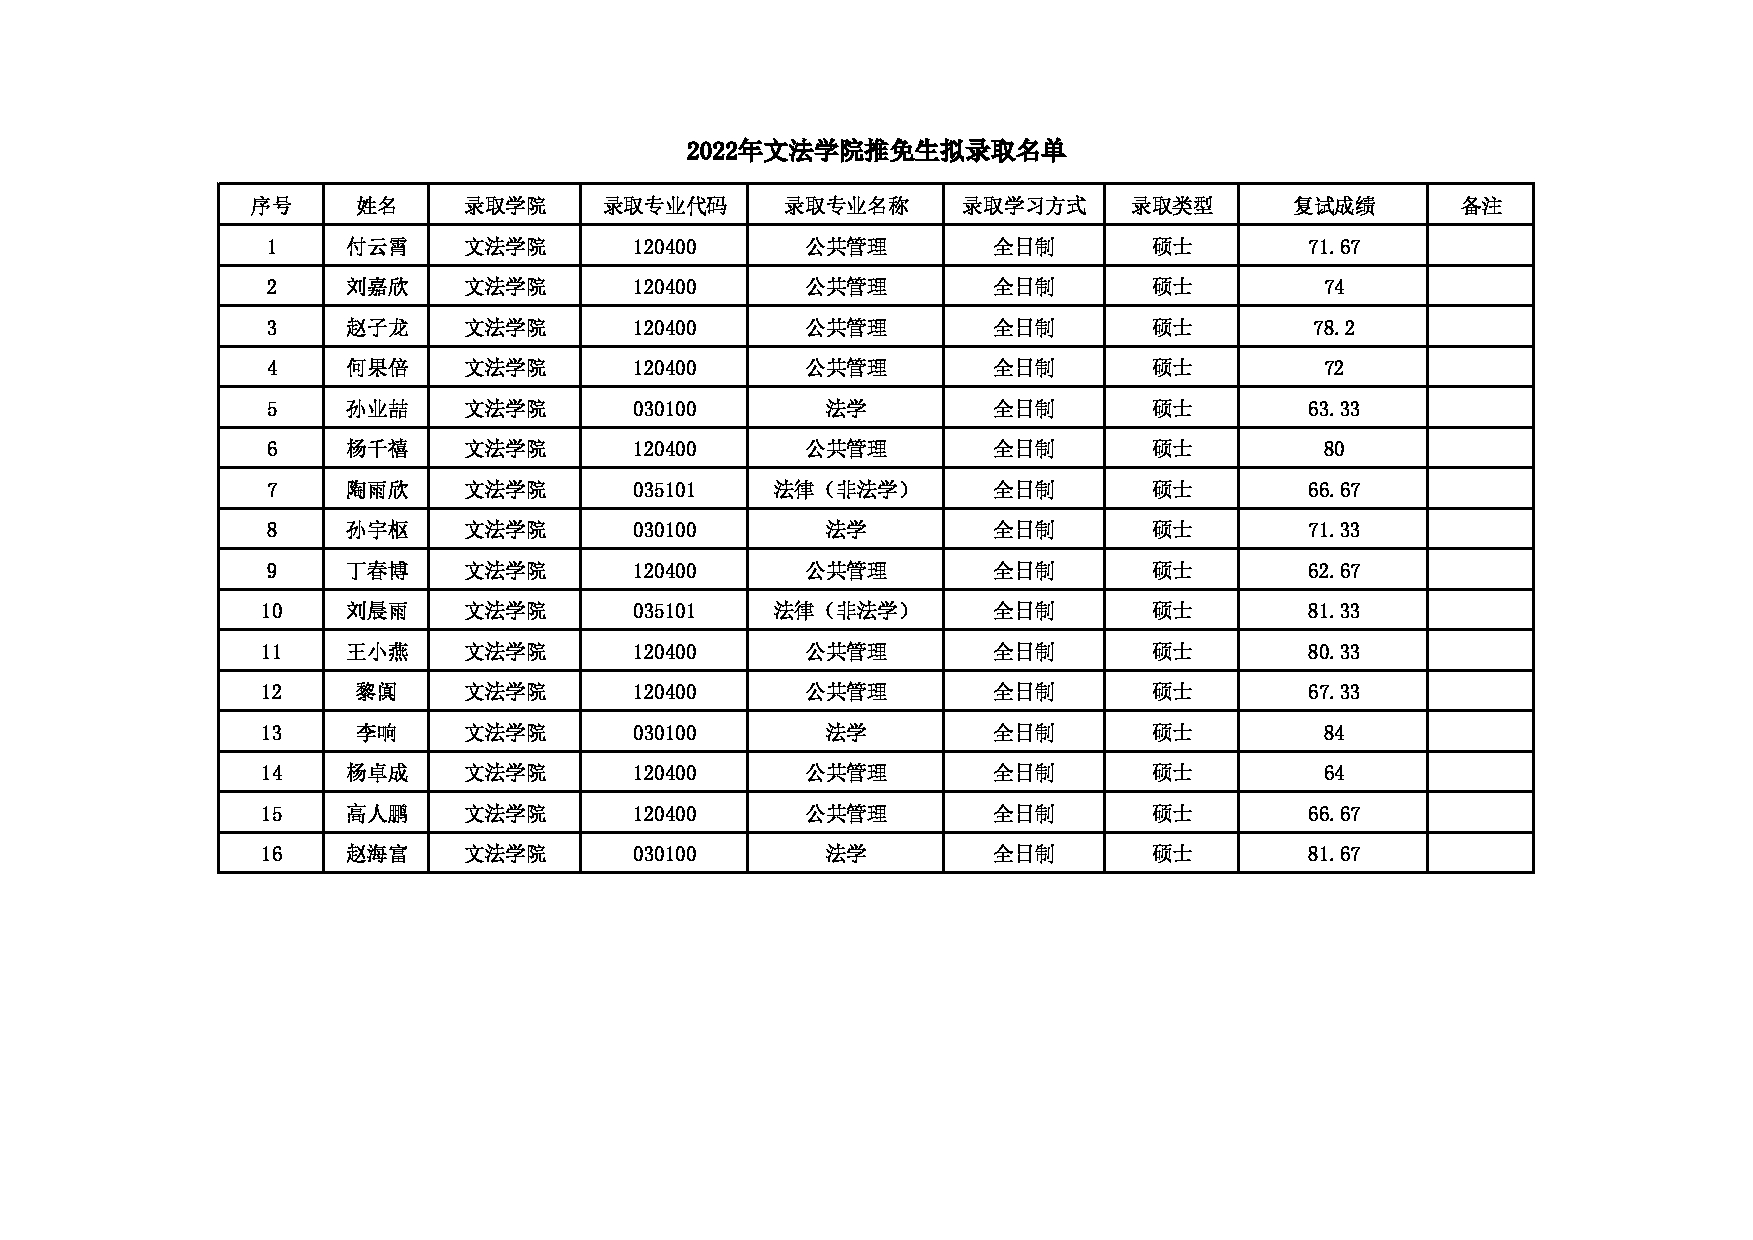 2022考研拟录取名单： 北京化工大学2022年文法学院推免生拟录取名单 第1页